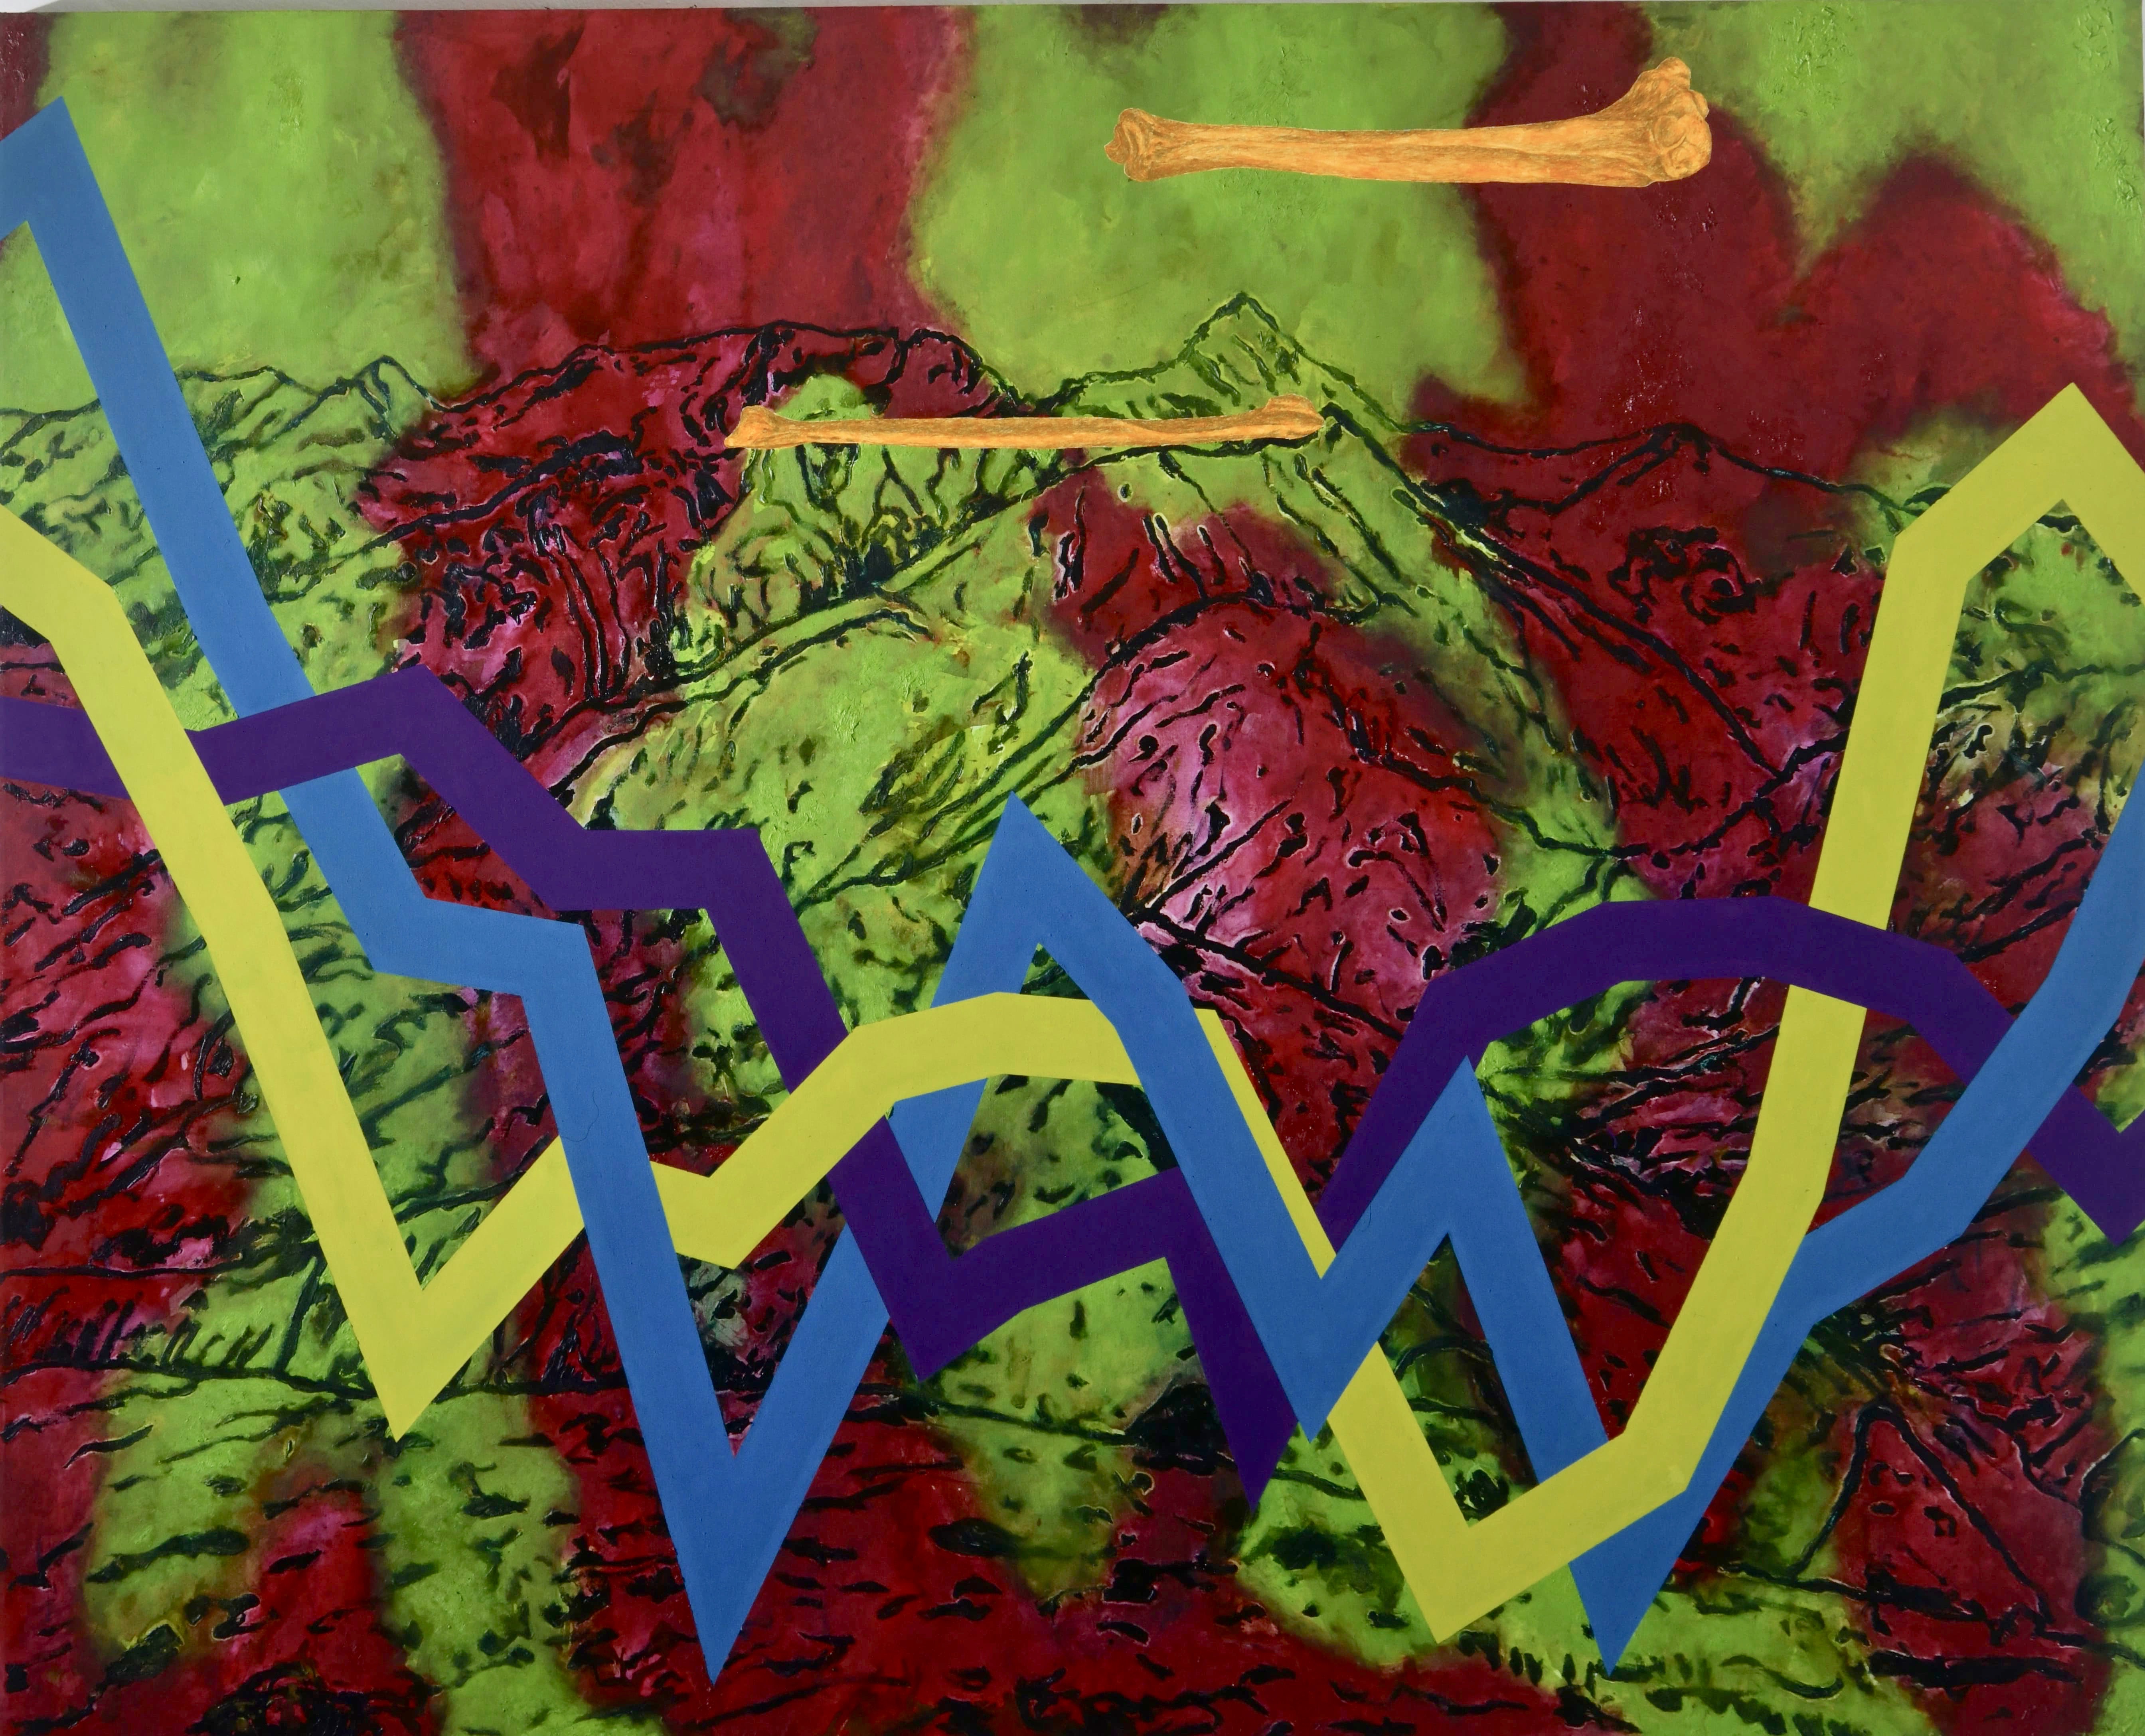 Camouflage II, Acryl, Eiöltempera, Öl und Kleisterfarbe auf Leinwand, 195 x 242 cm, 1999, Erwin Holl